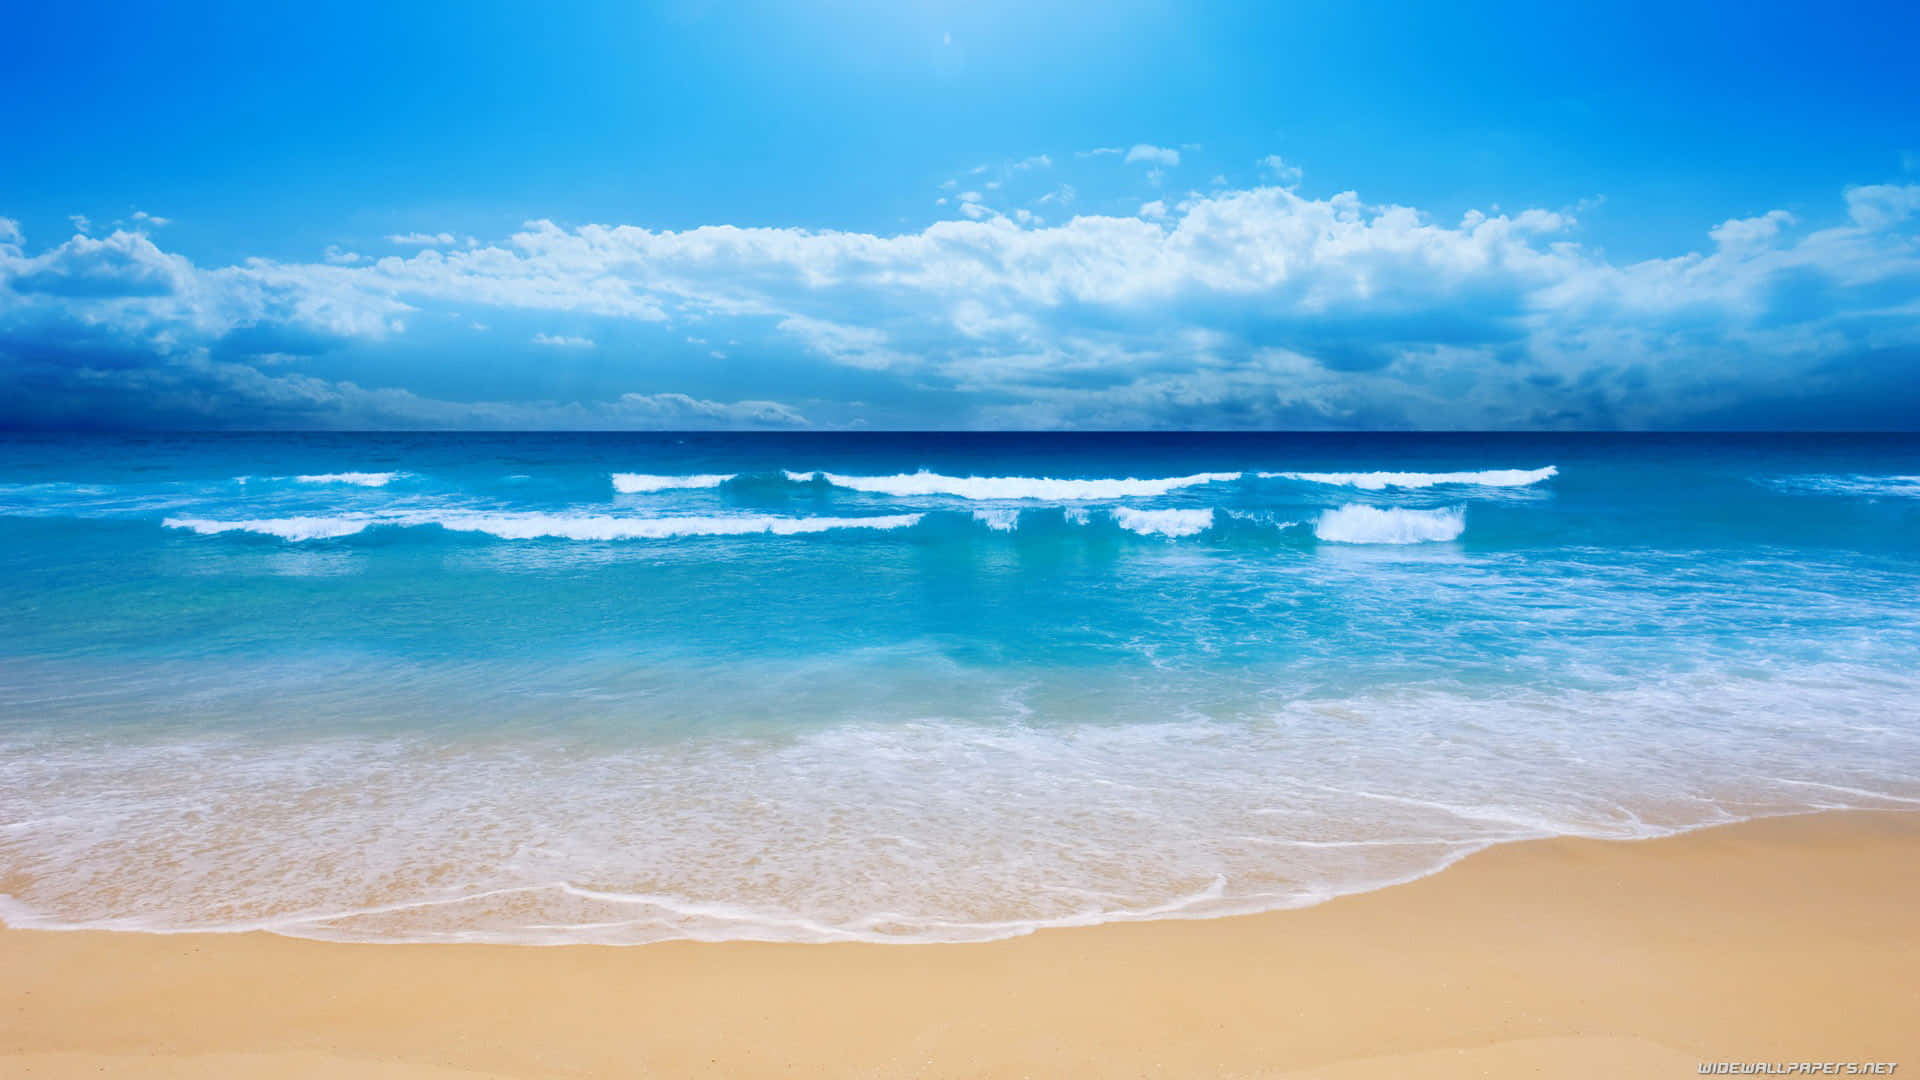 Hình nền biển: Cảm giác như đang ngồi bãi biển, mùi mặn của biển trở nên sống động hơn bao giờ hết nhờ những hình ảnh tuyệt vời về biển. Hãy xem những bức ảnh này để tưởng tượng và cảm nhận sự bình yên nơi bãi biển.